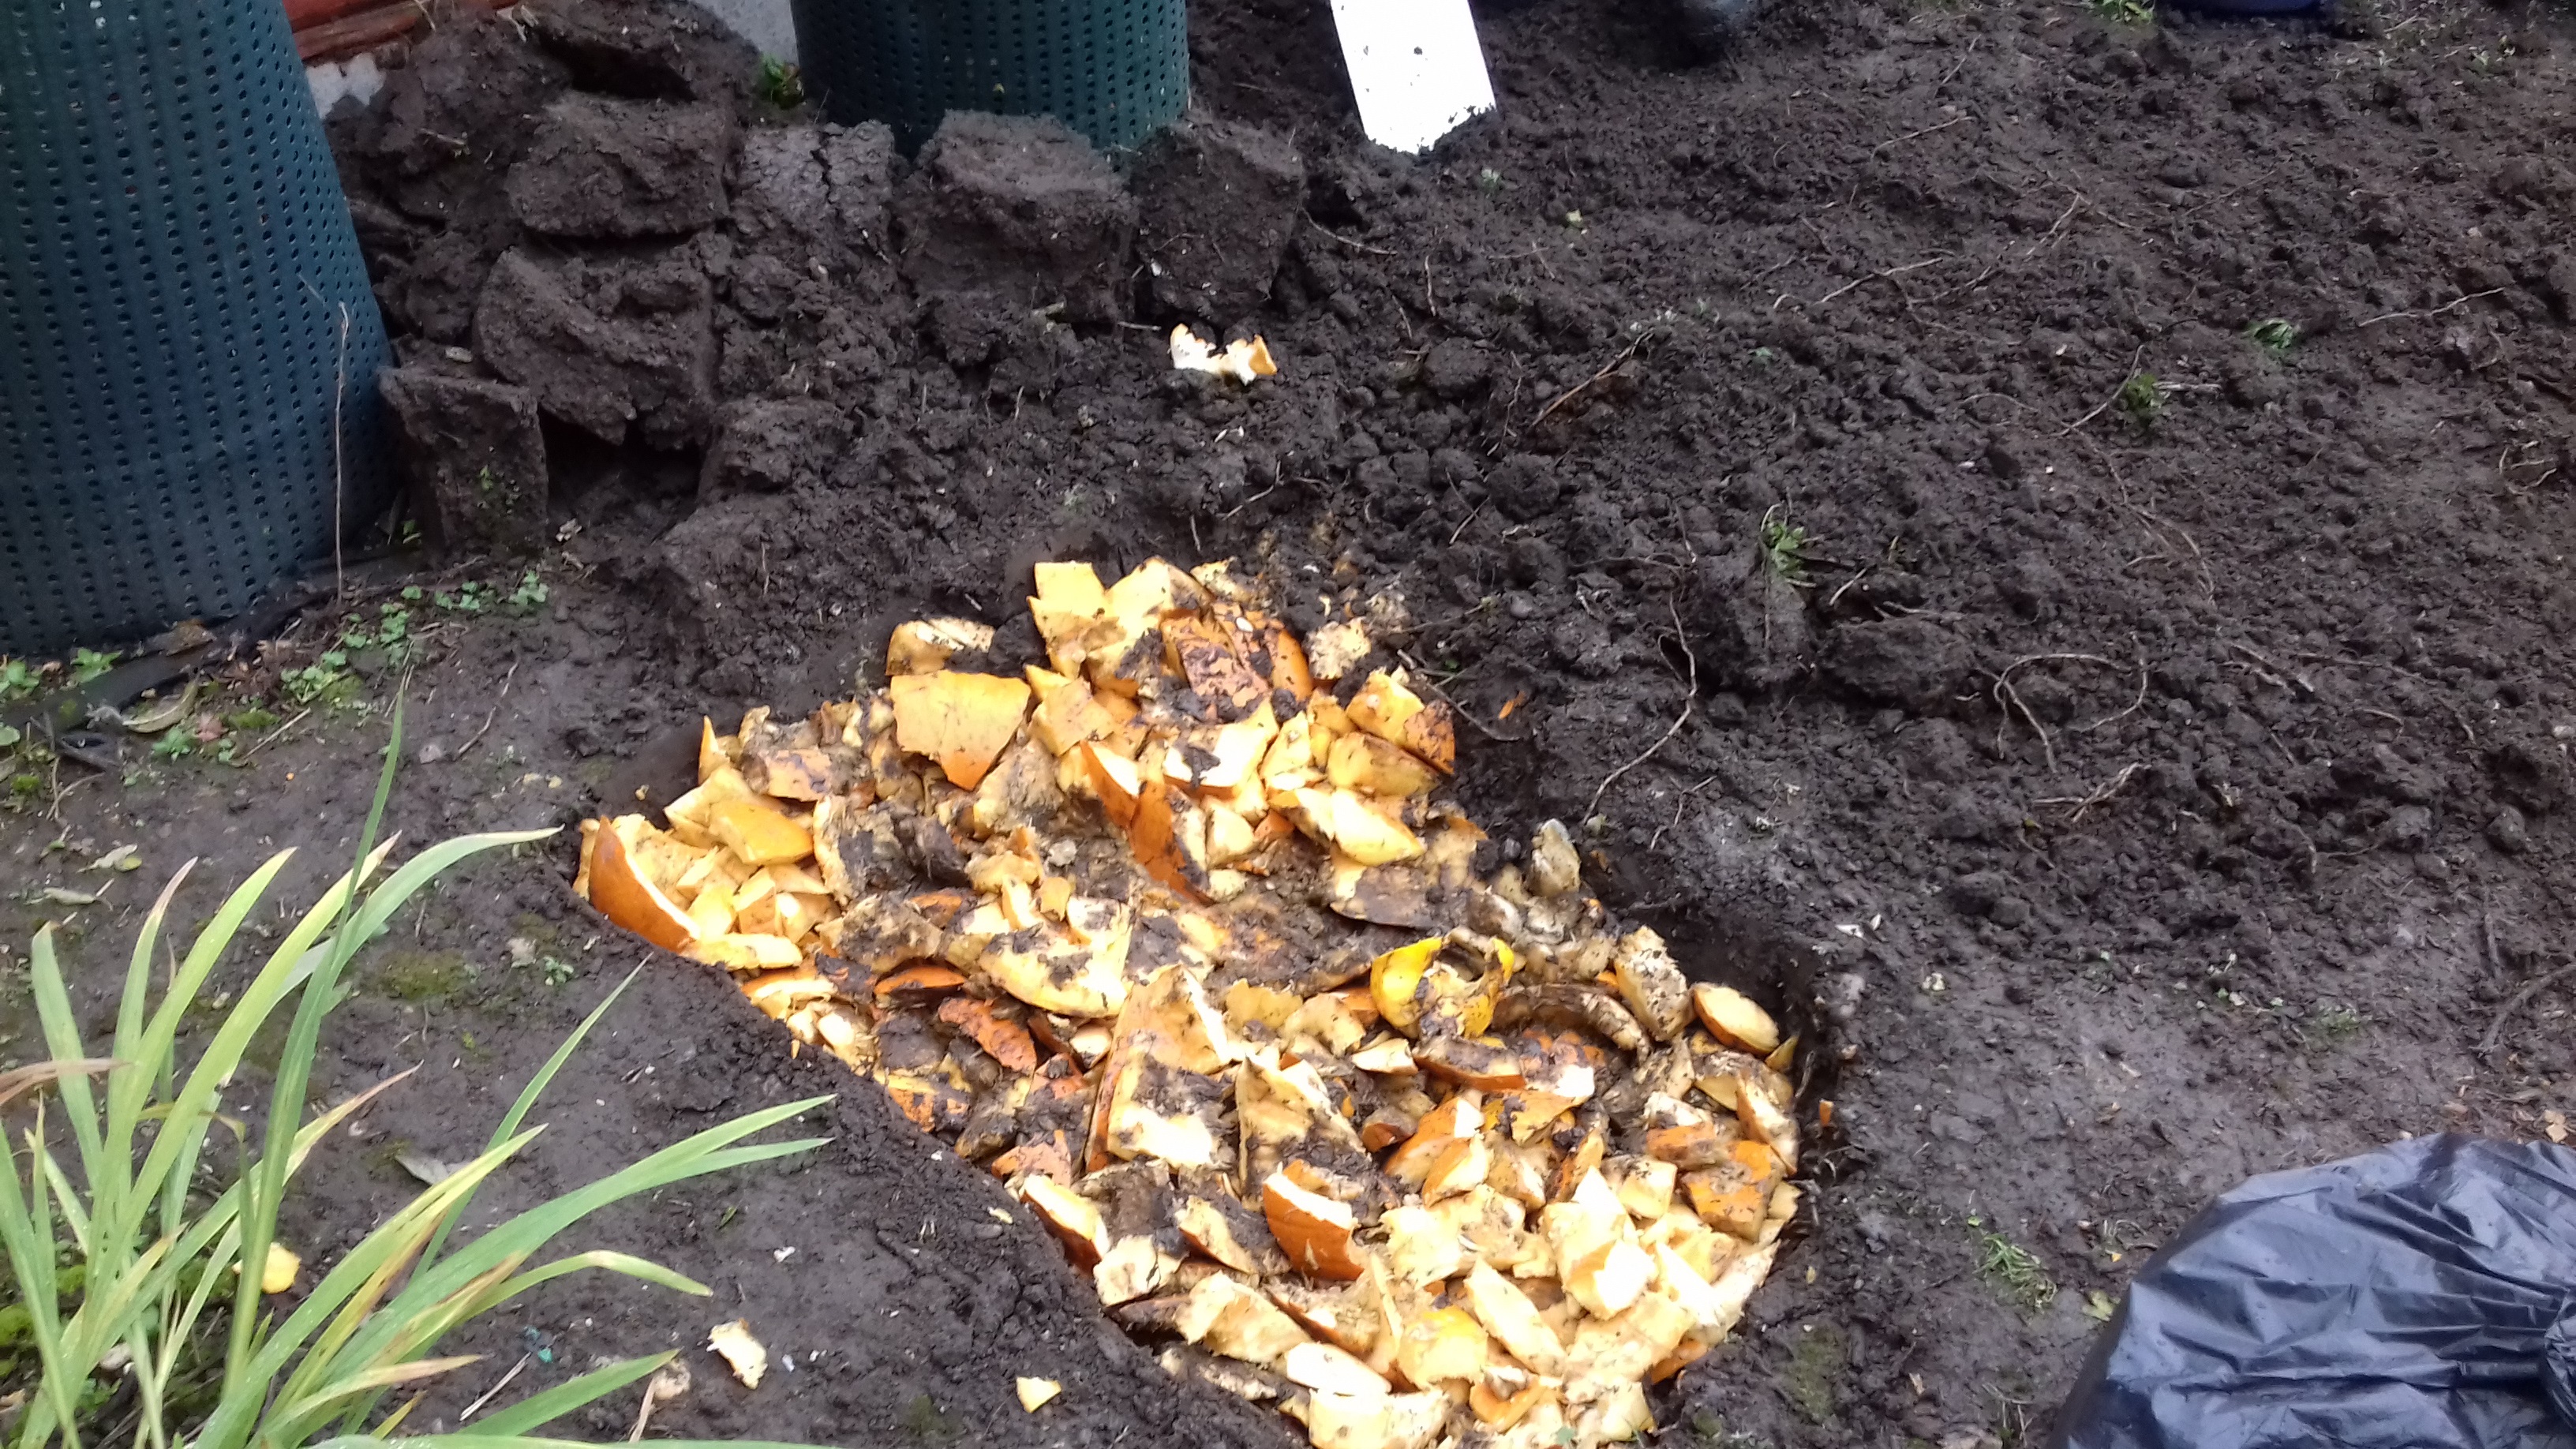 Composting Pumpkins - www.carryoncomposting.com